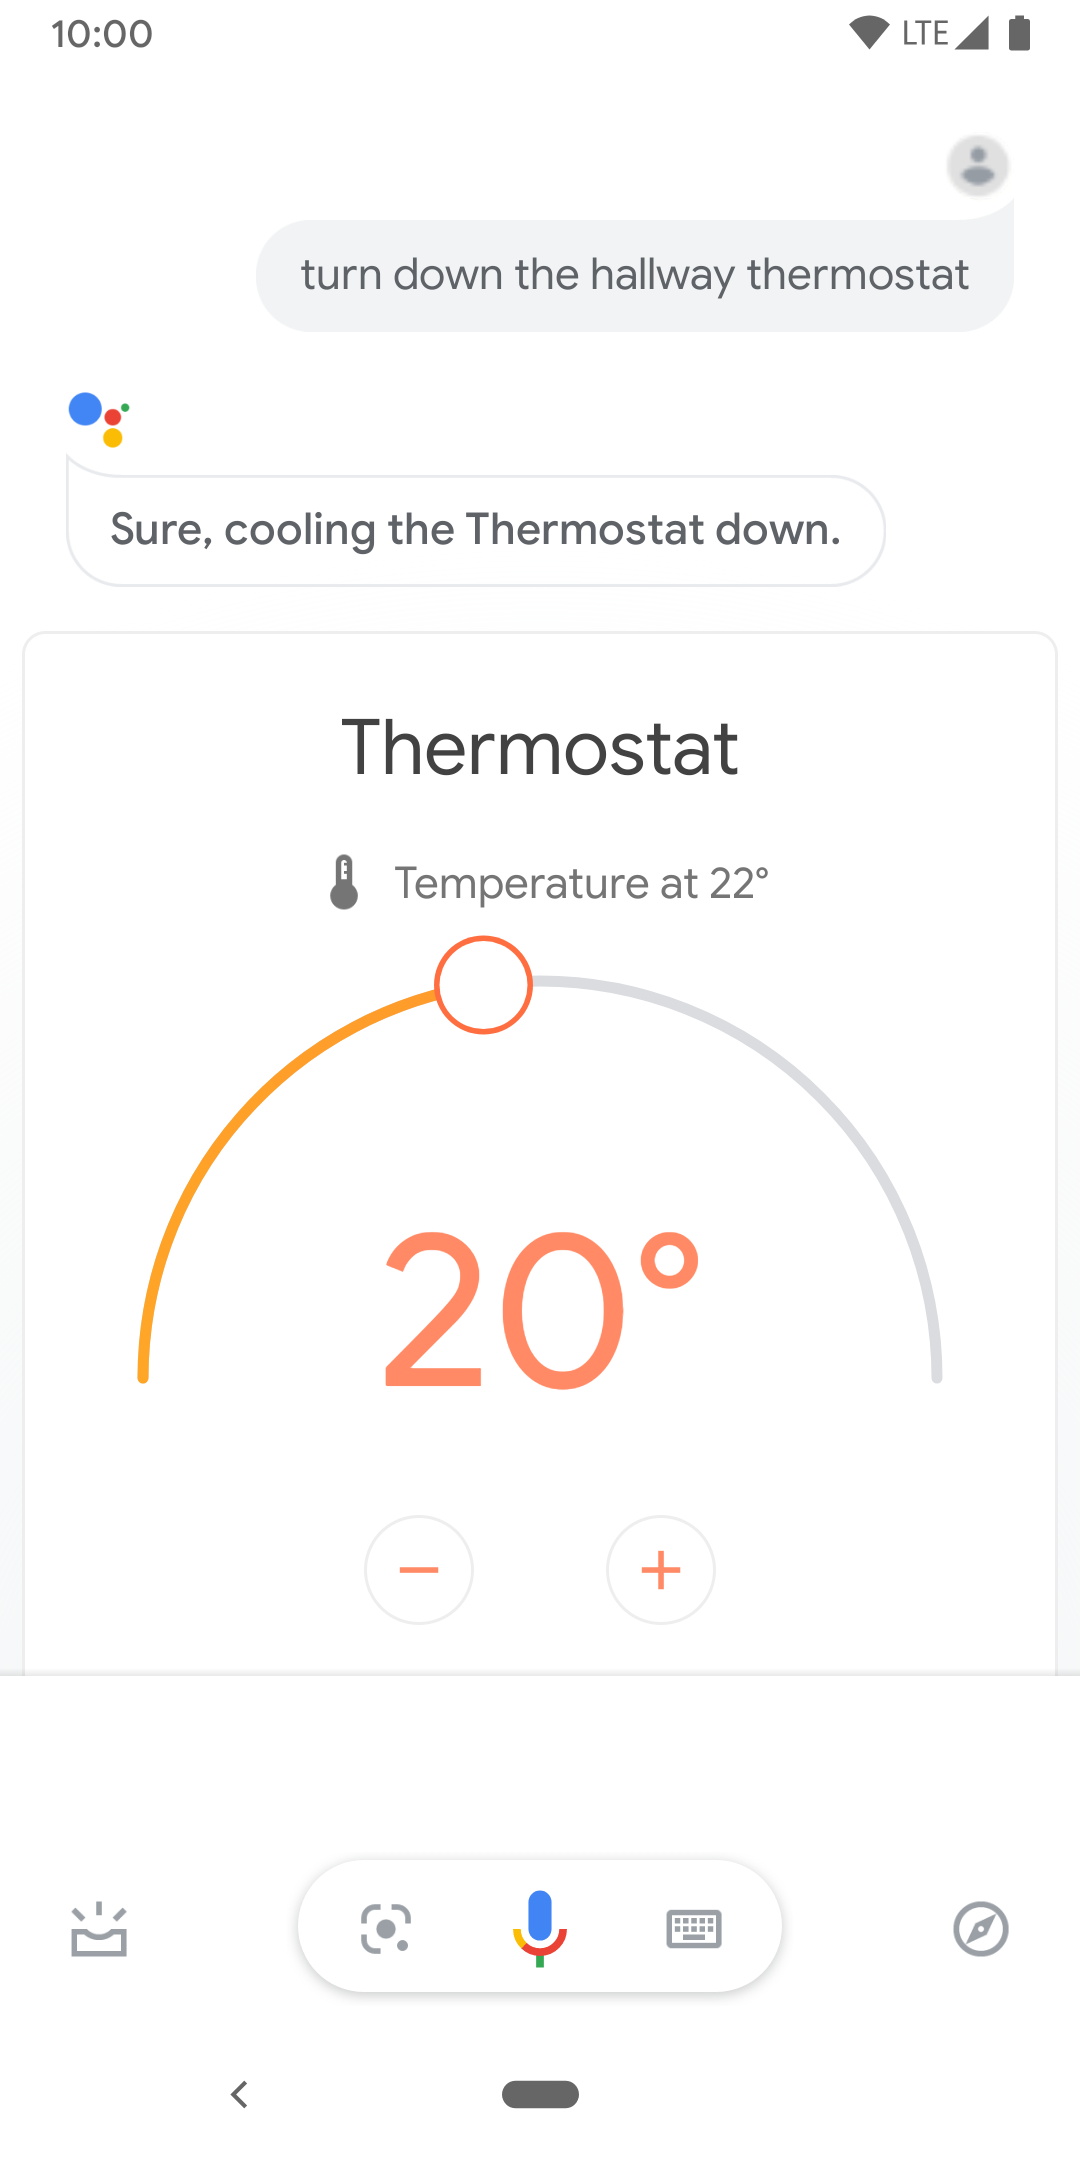 इस इमेज में, हॉलवे थर्मोस्टैट के तापमान को कंट्रोल करने के लिए टच कंट्रोल दिख रहे हैं.